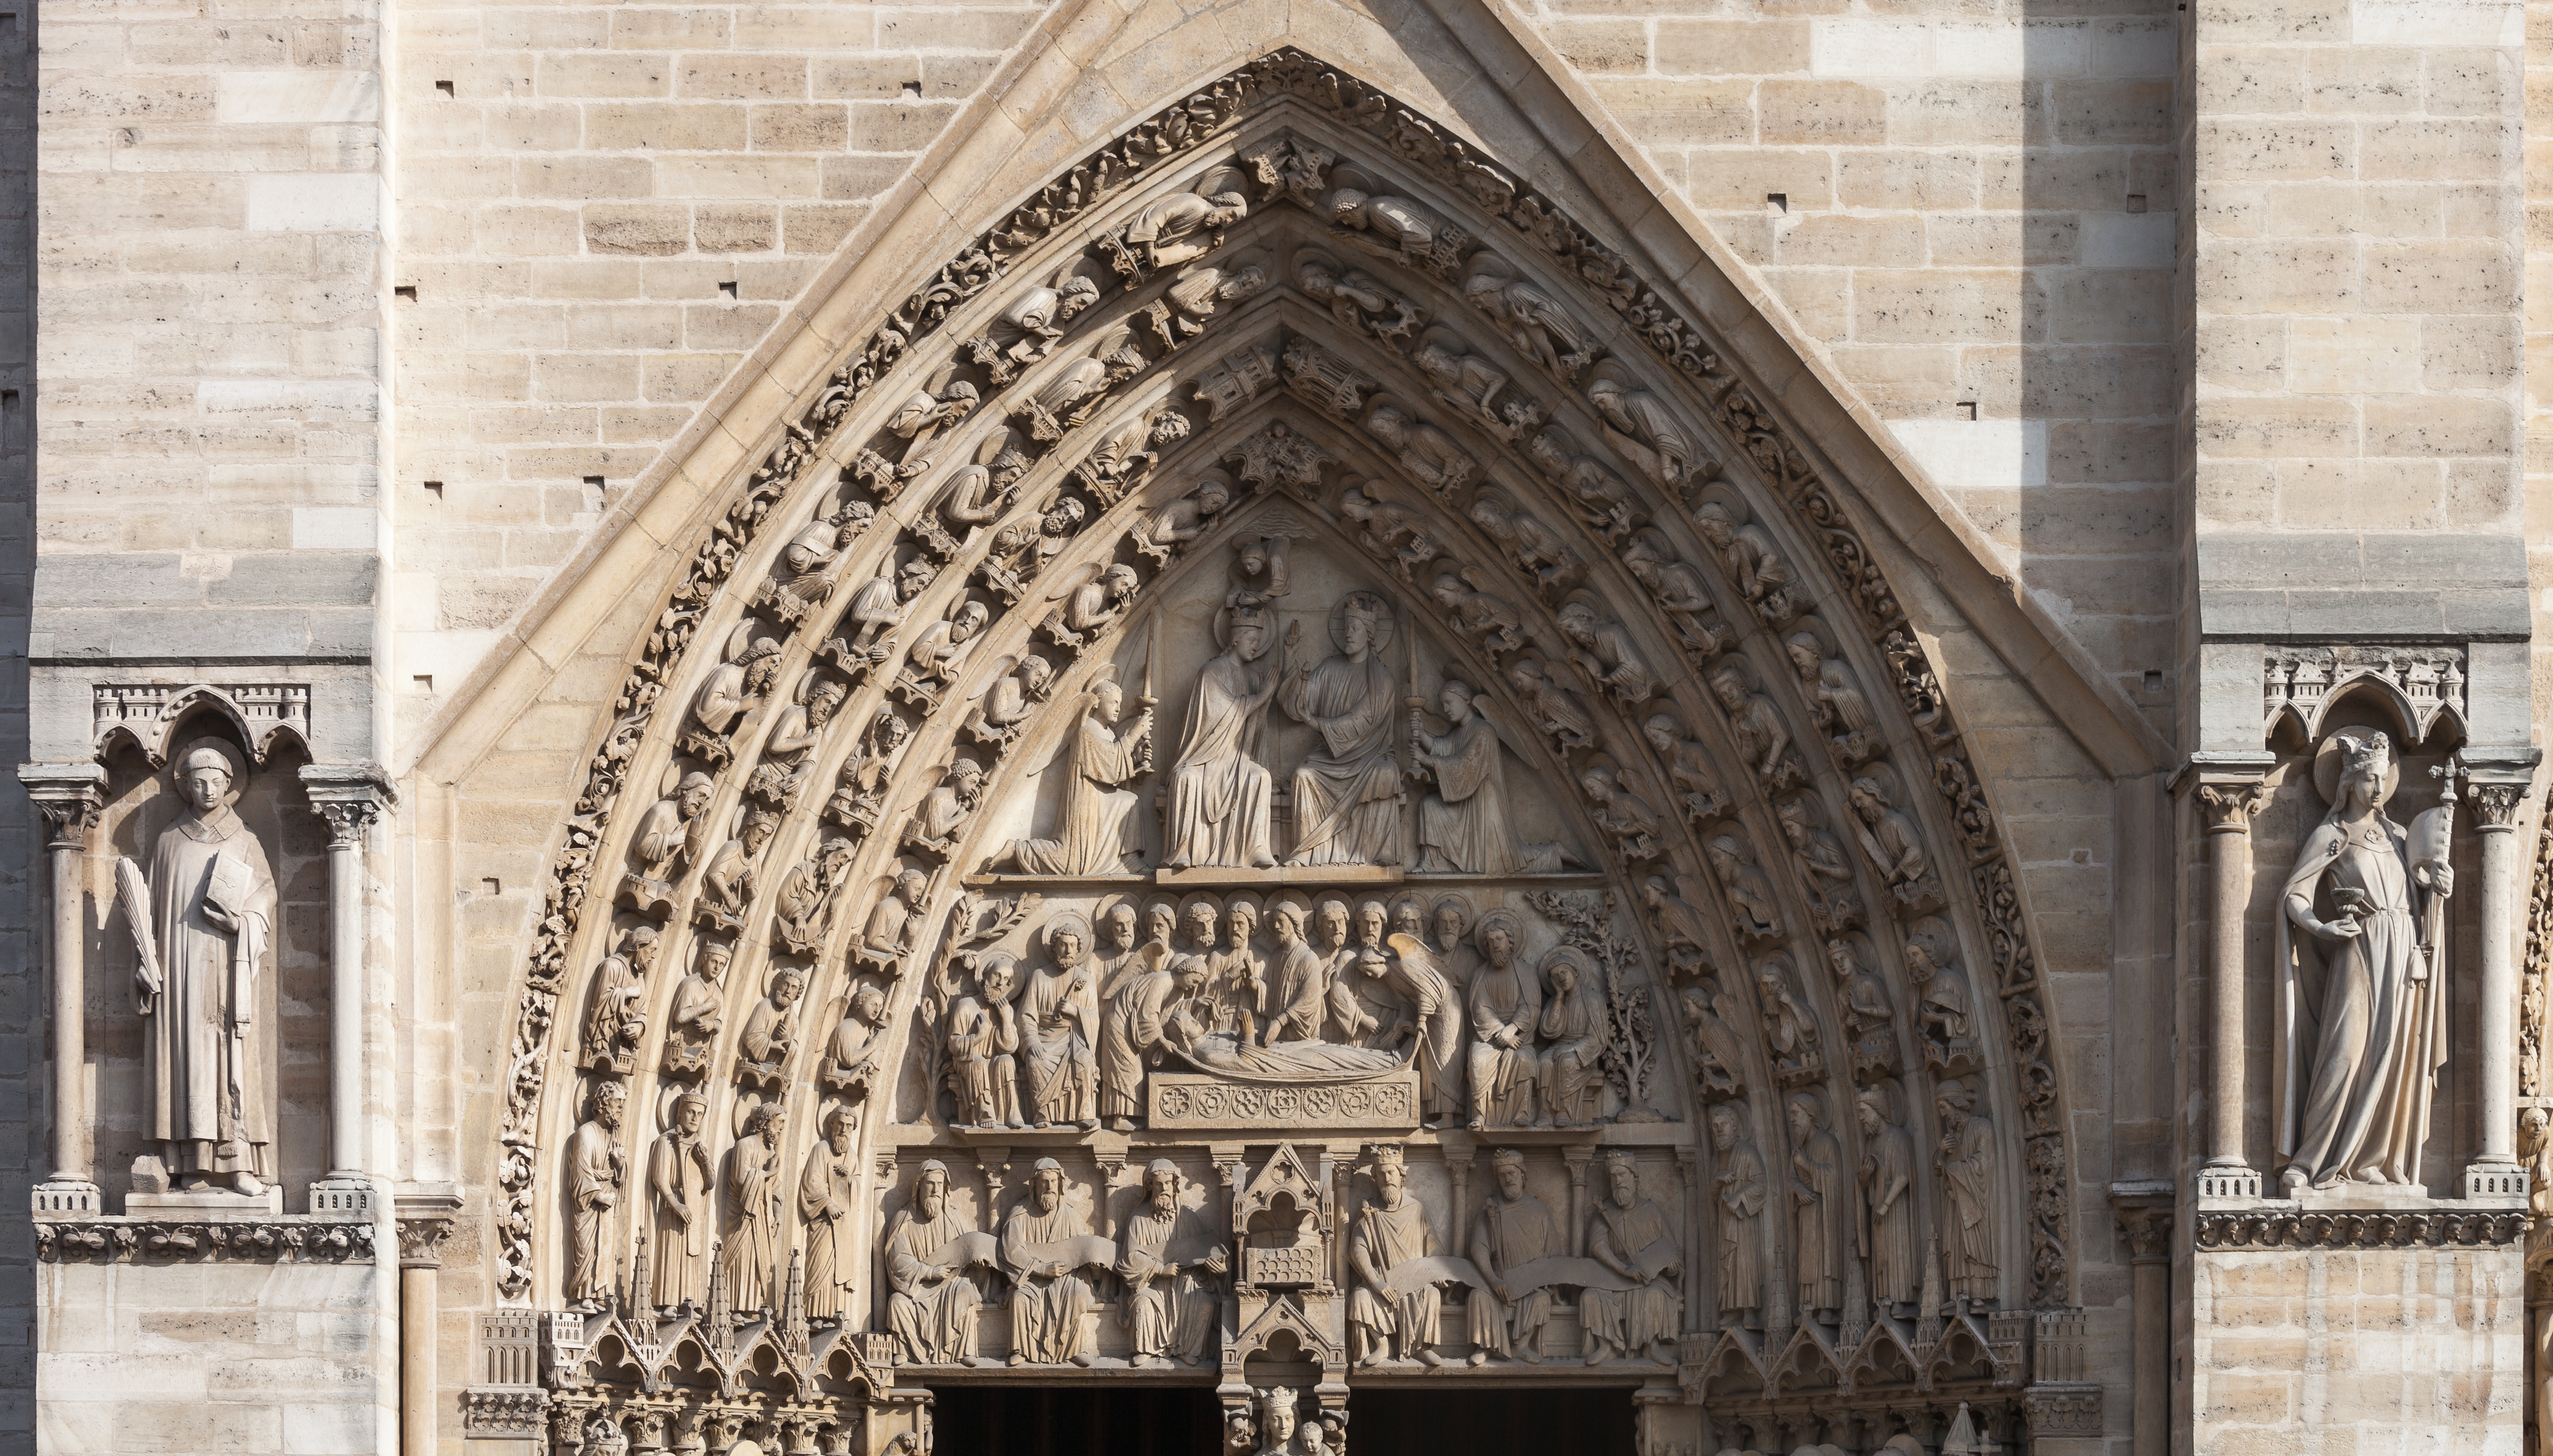 2017. Portail Sainte Anne of Notre-Dame de Paris'1